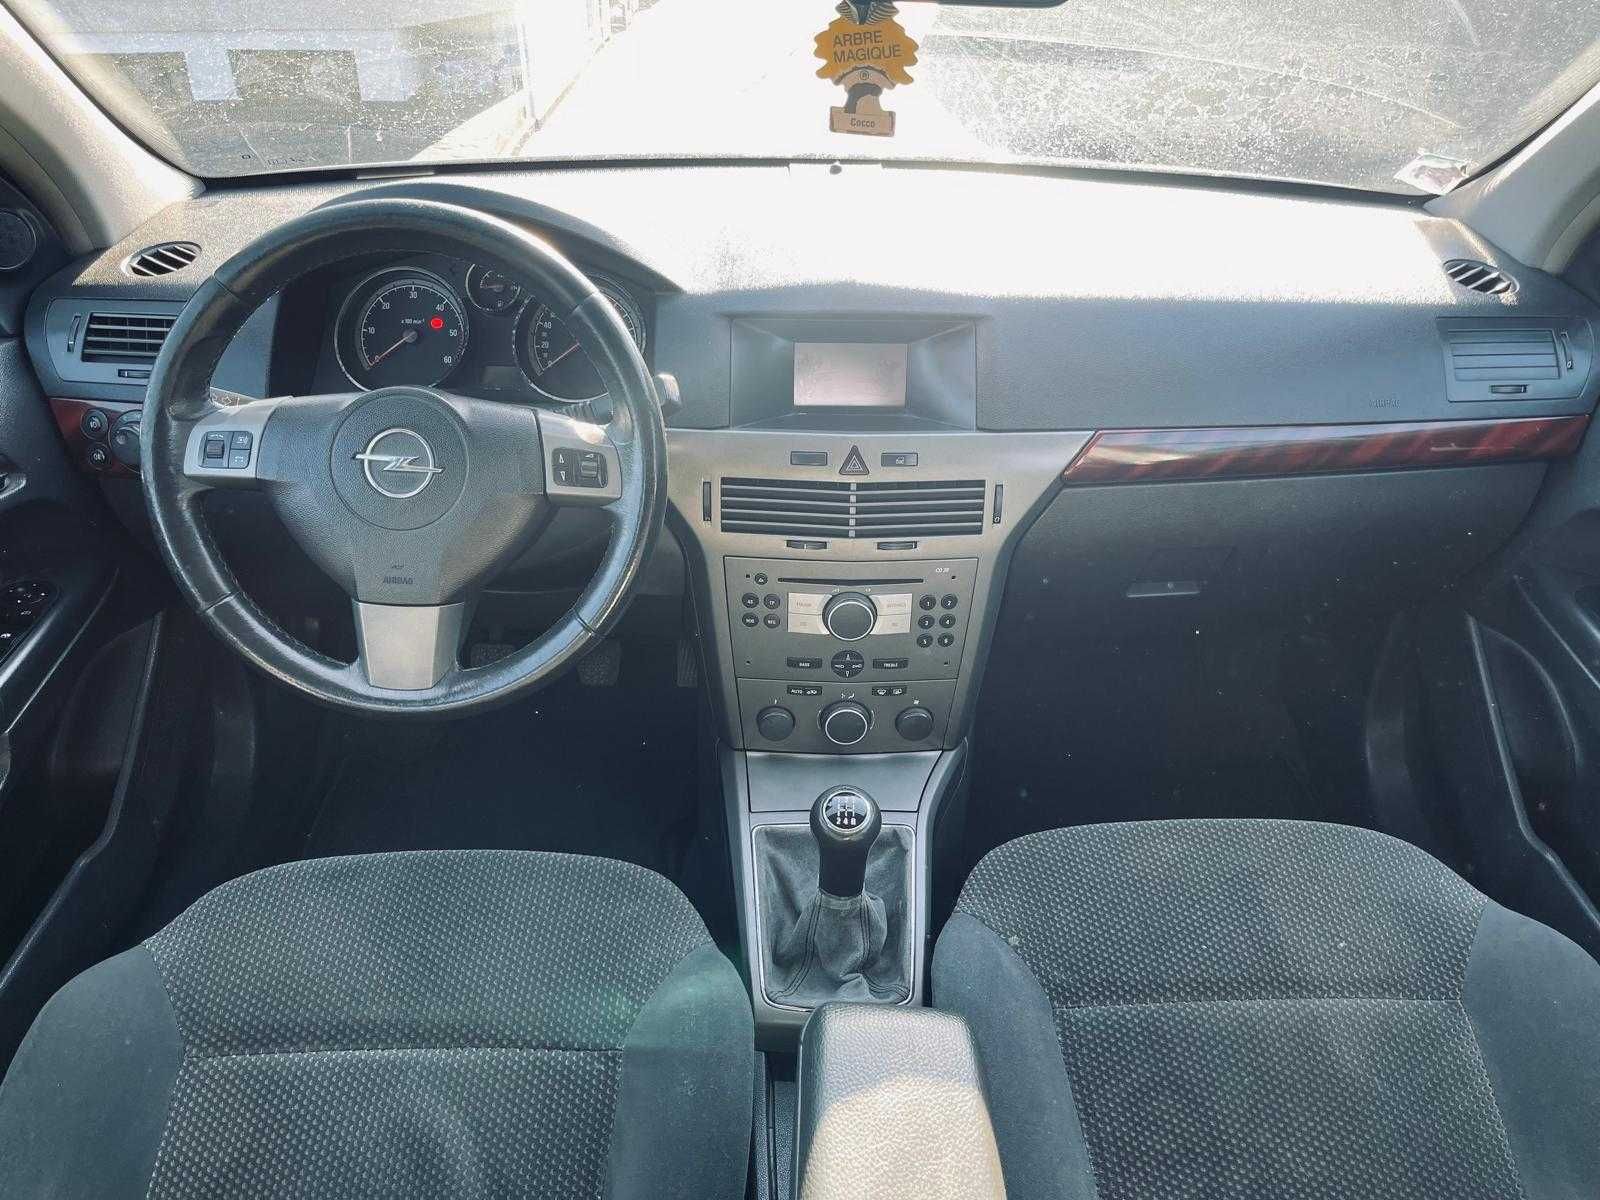 Opel Astra 1.7 CDTi Cosmo